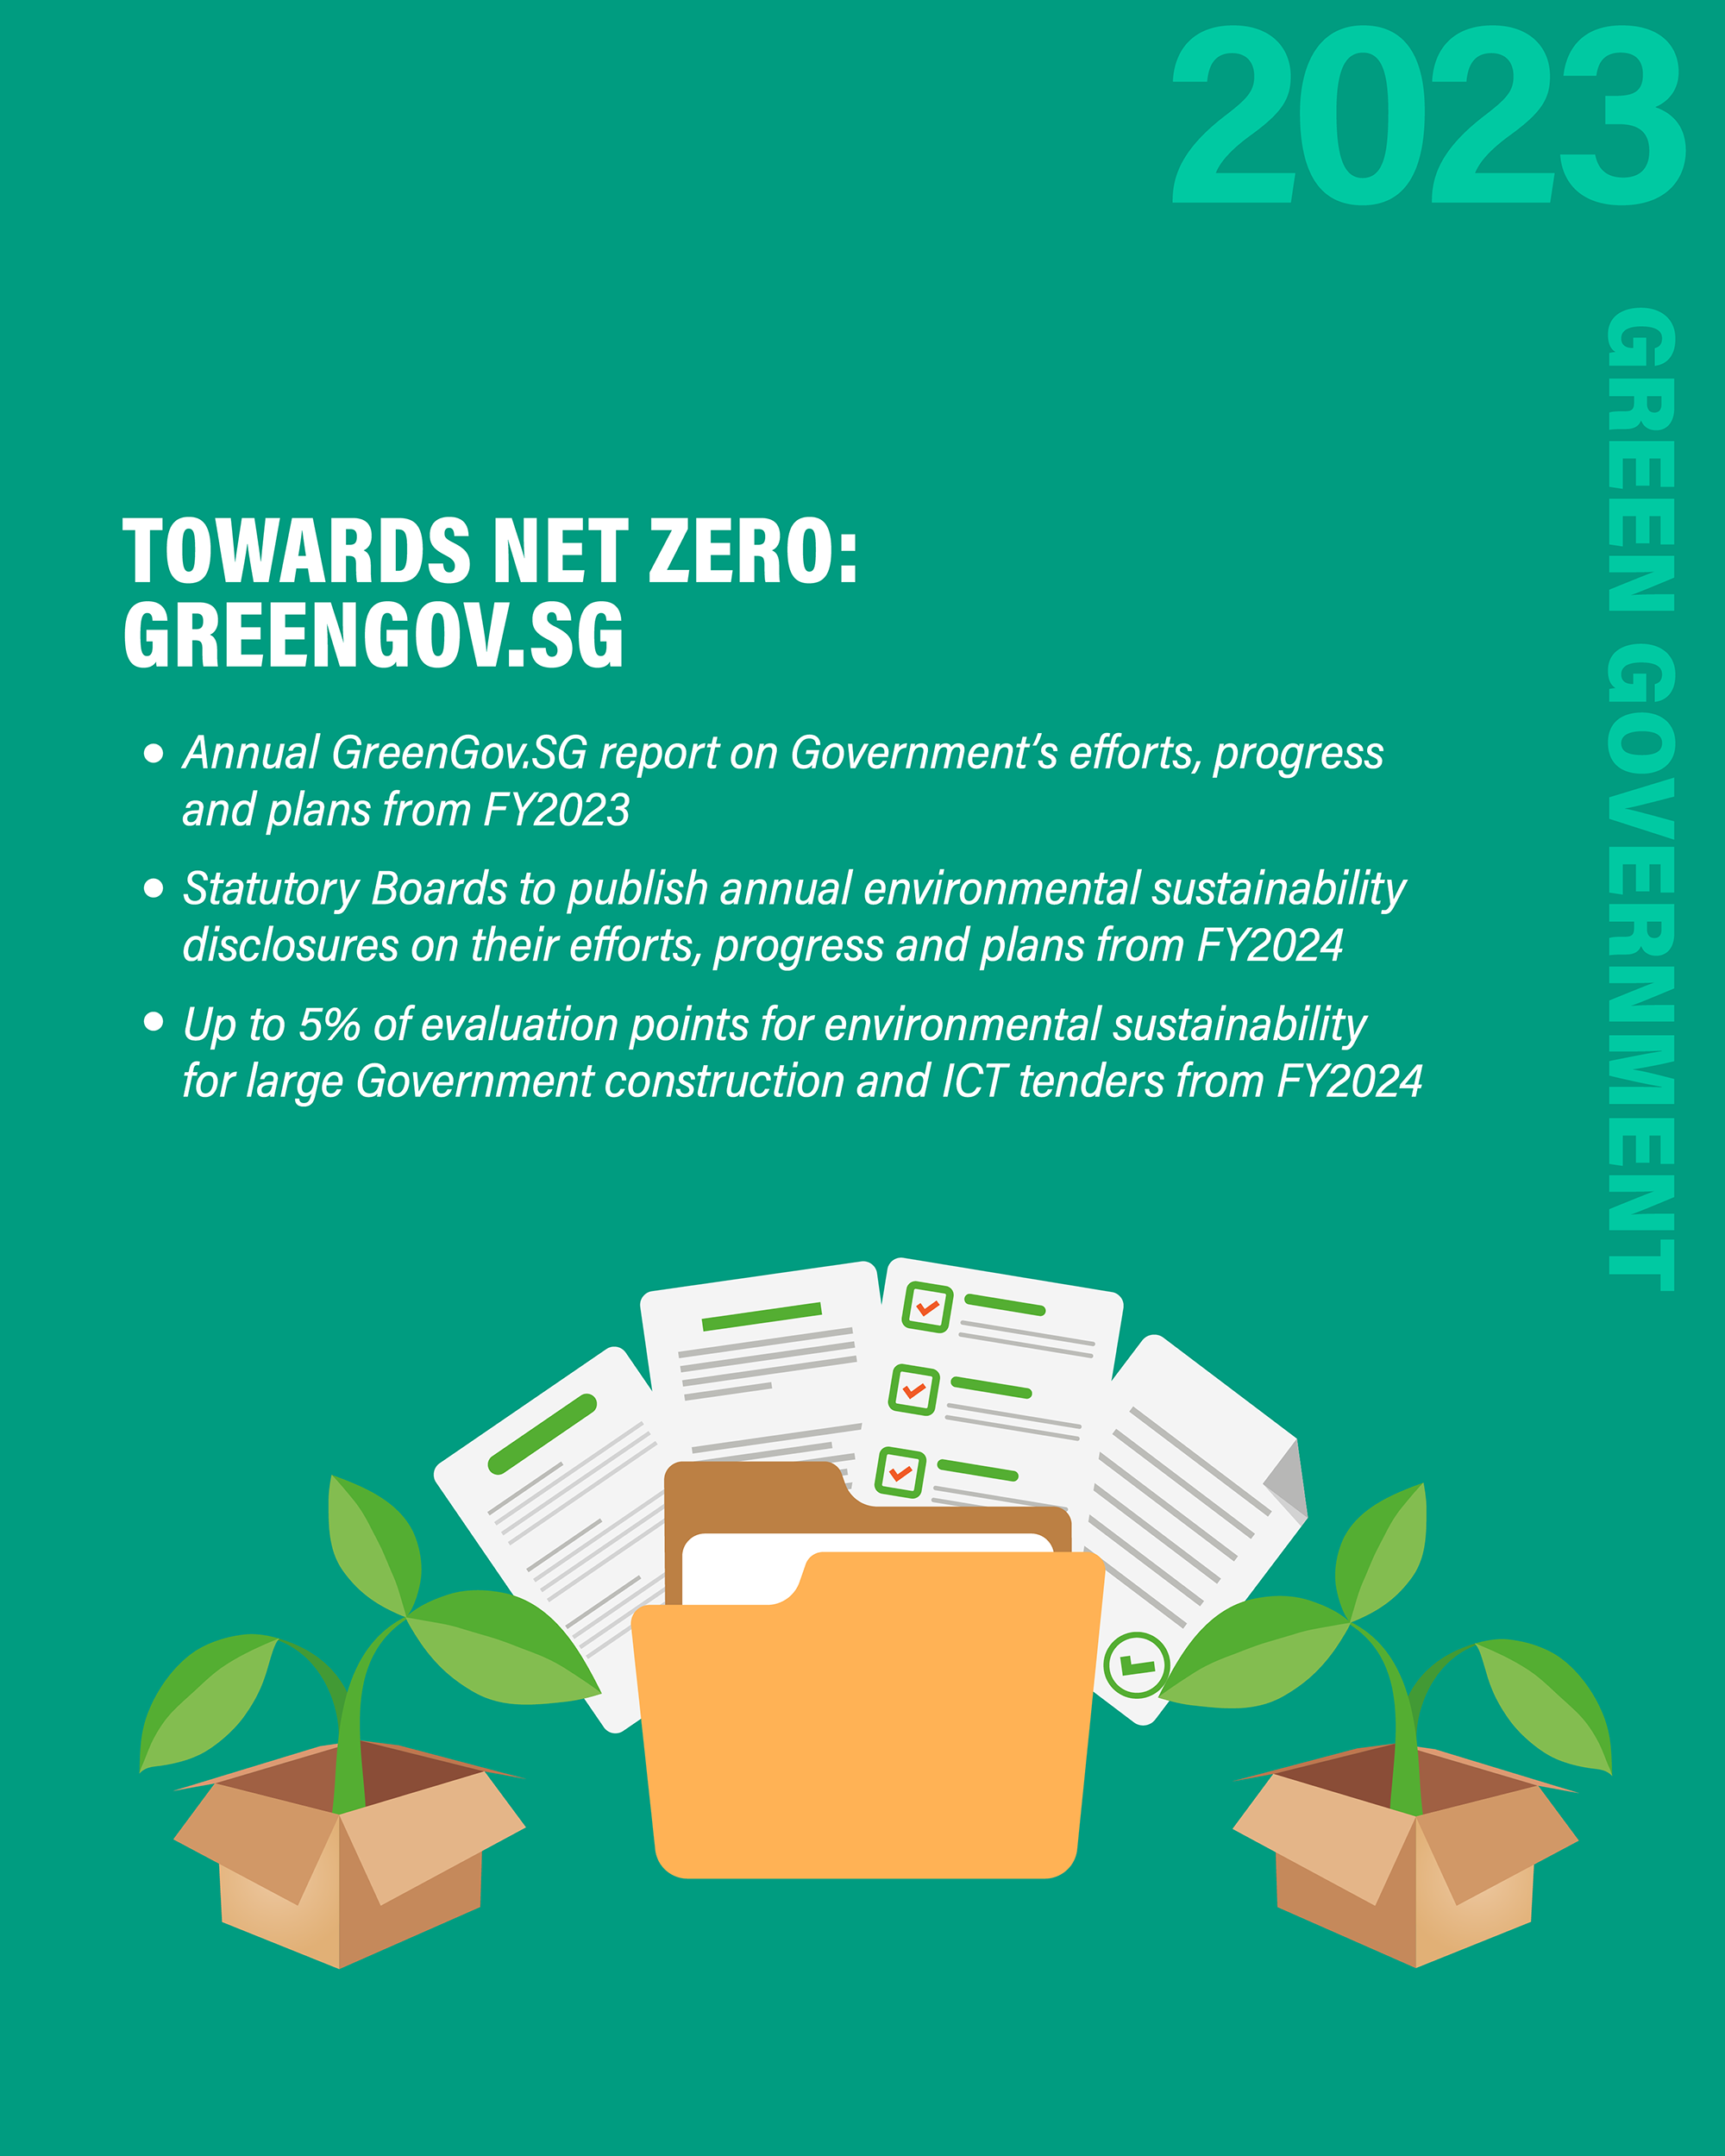 COS 2023 Singapore Green Plan 2030 Image 10